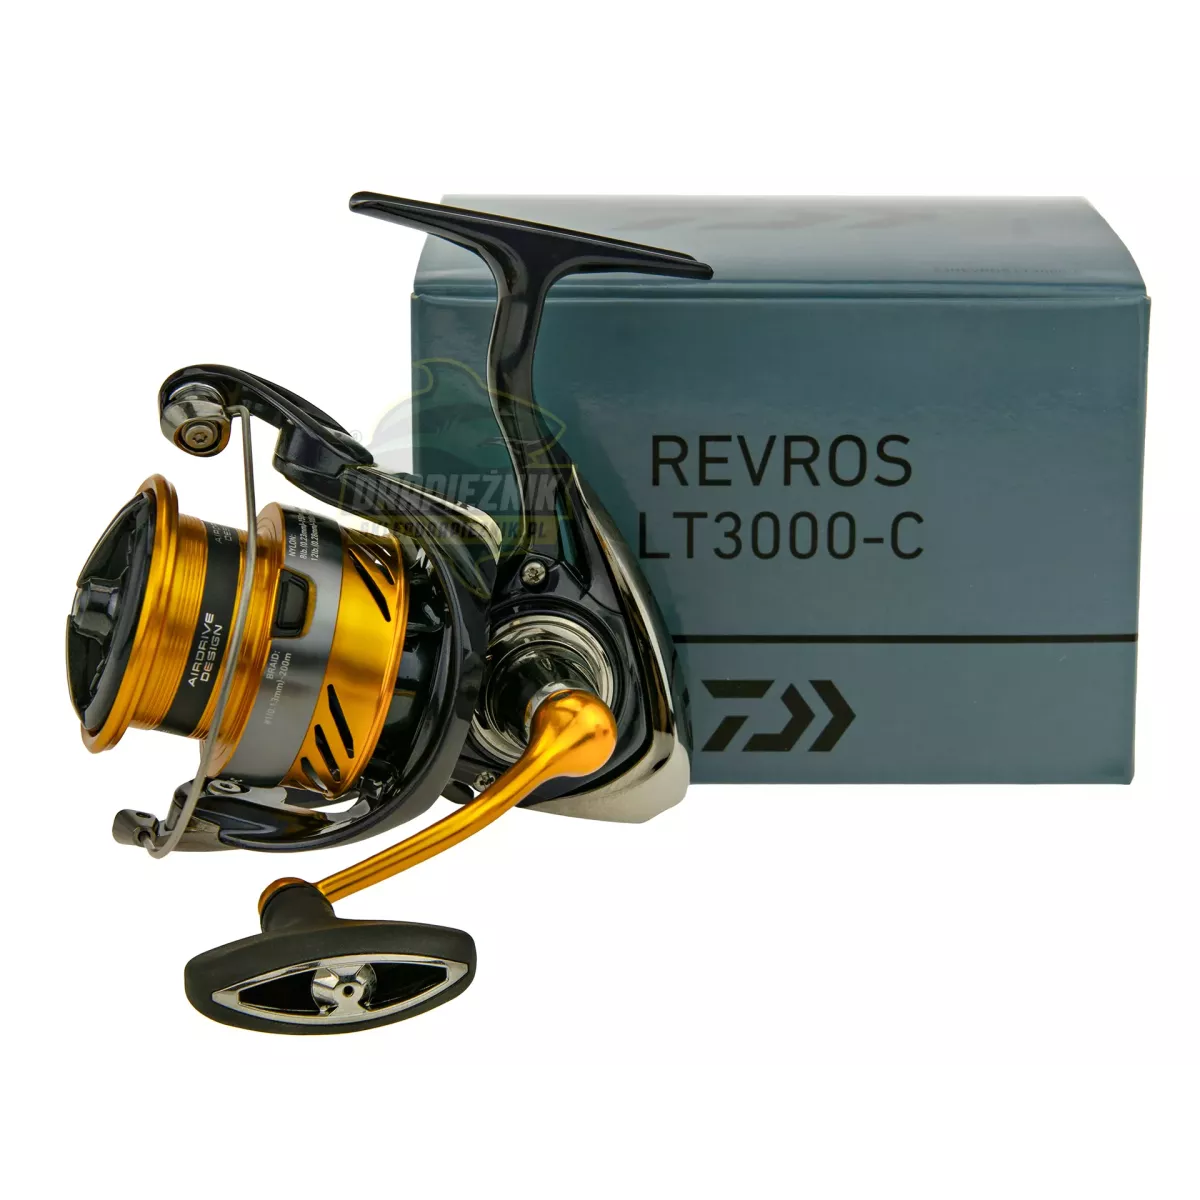 Kołowrotek Daiwa 23 Revros LT 3000-C